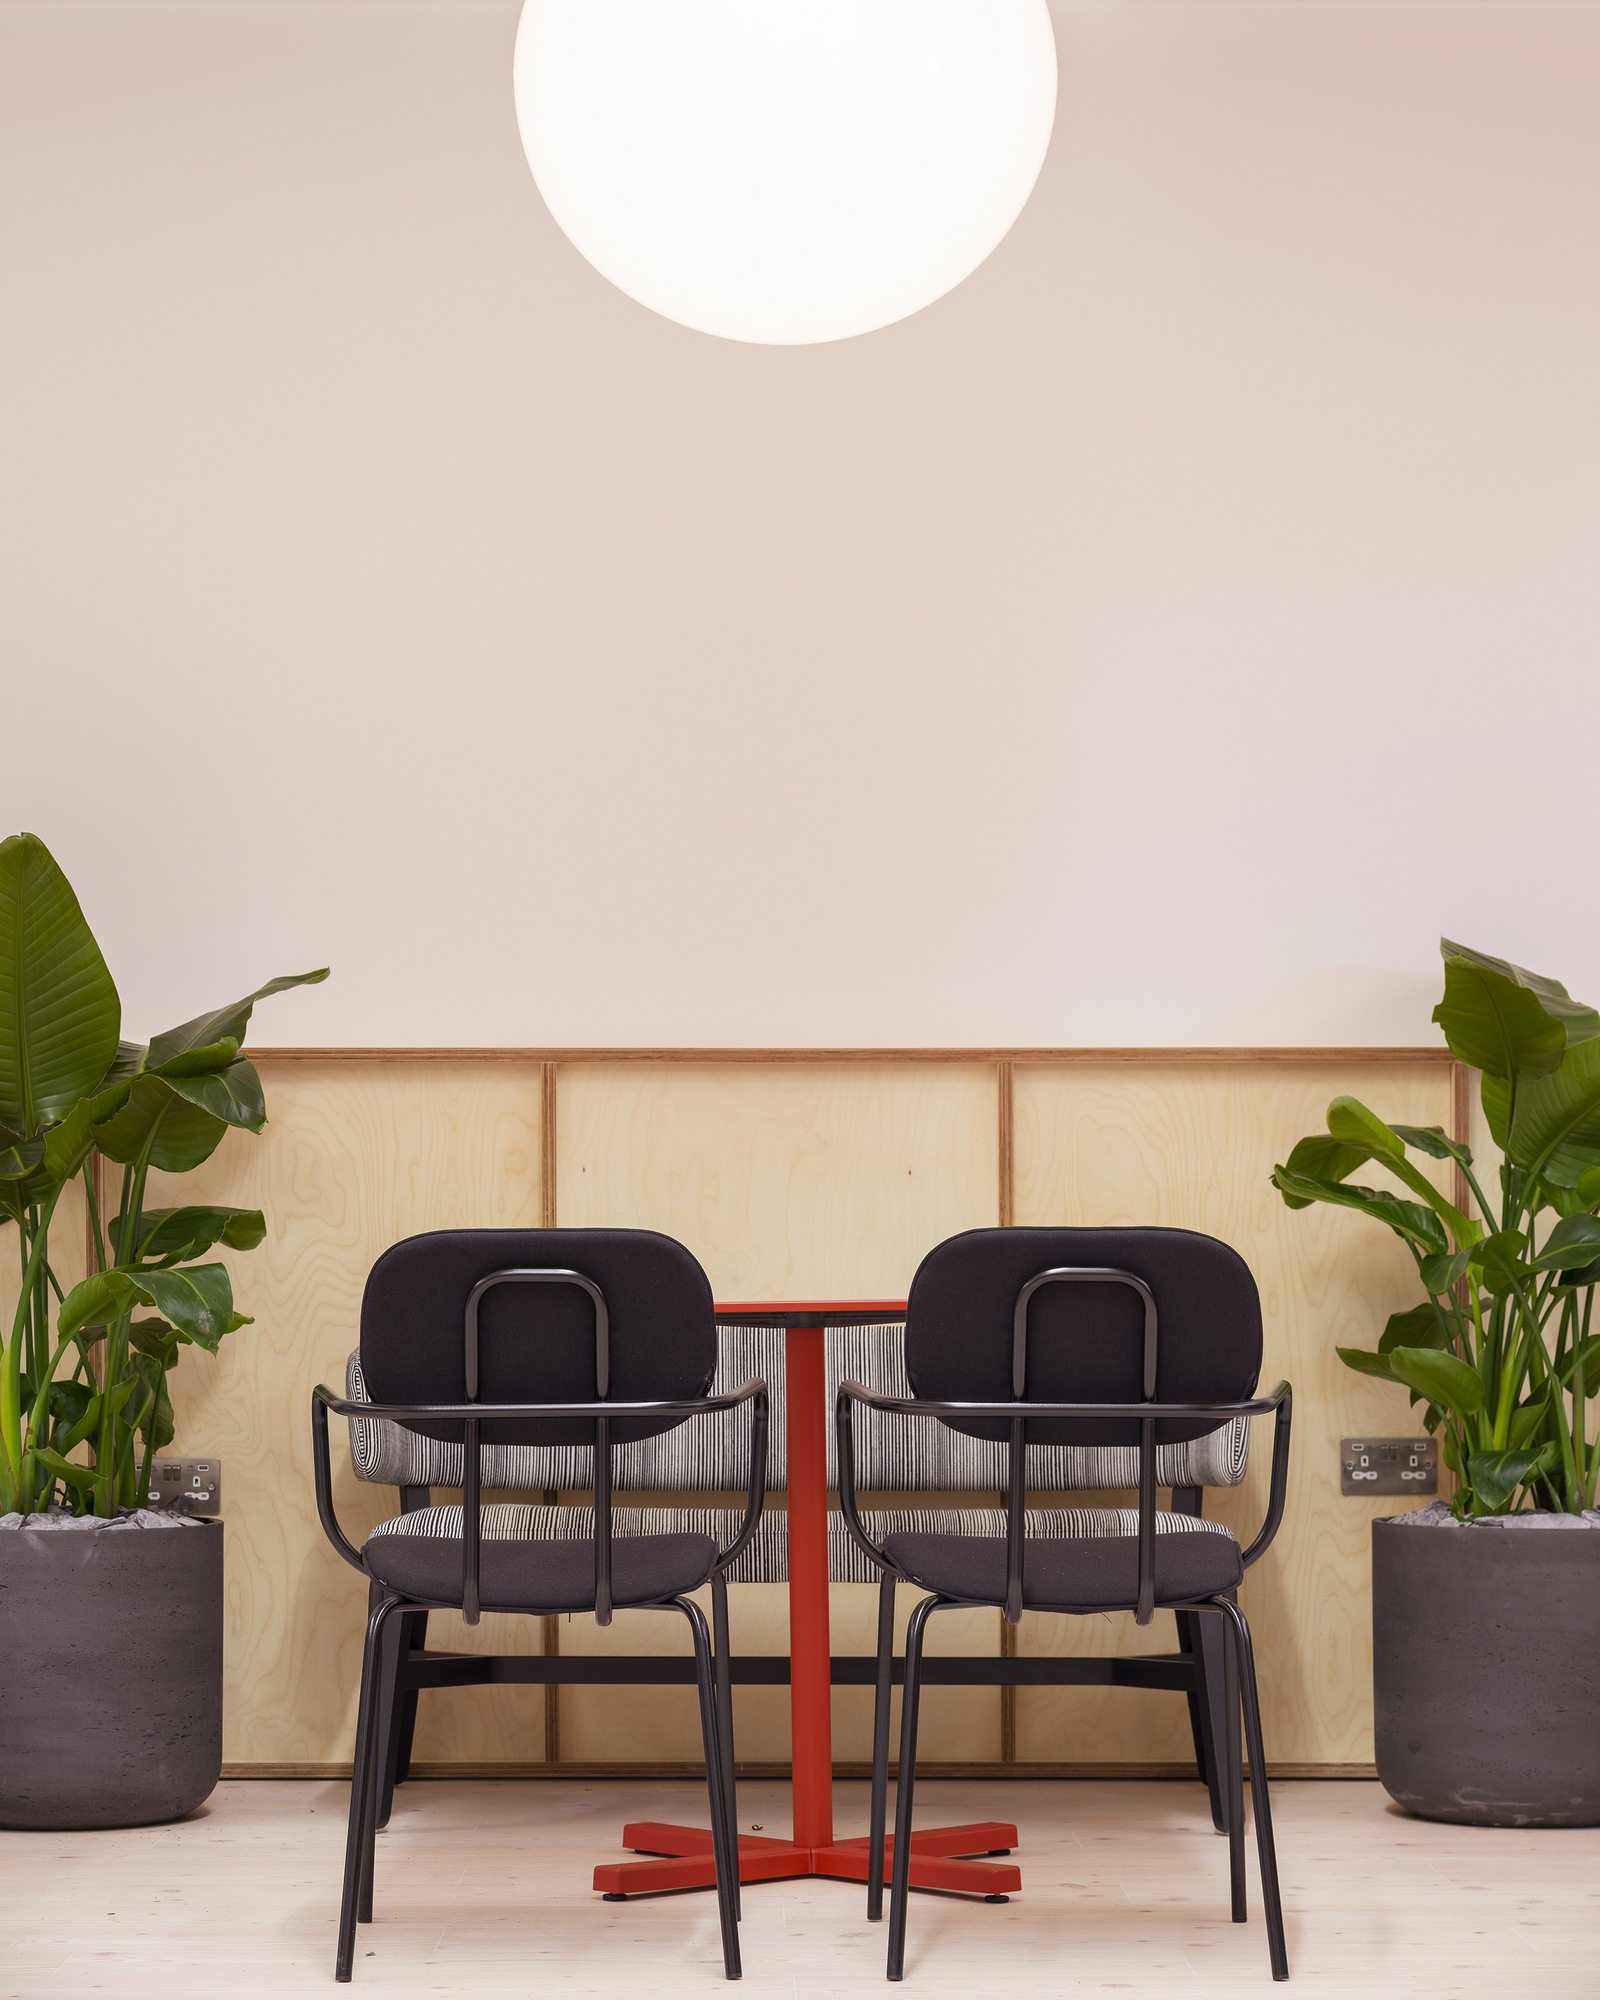 图片[7]|Idean办公室——伦敦|ART-Arrakis | 建筑室内设计的创新与灵感